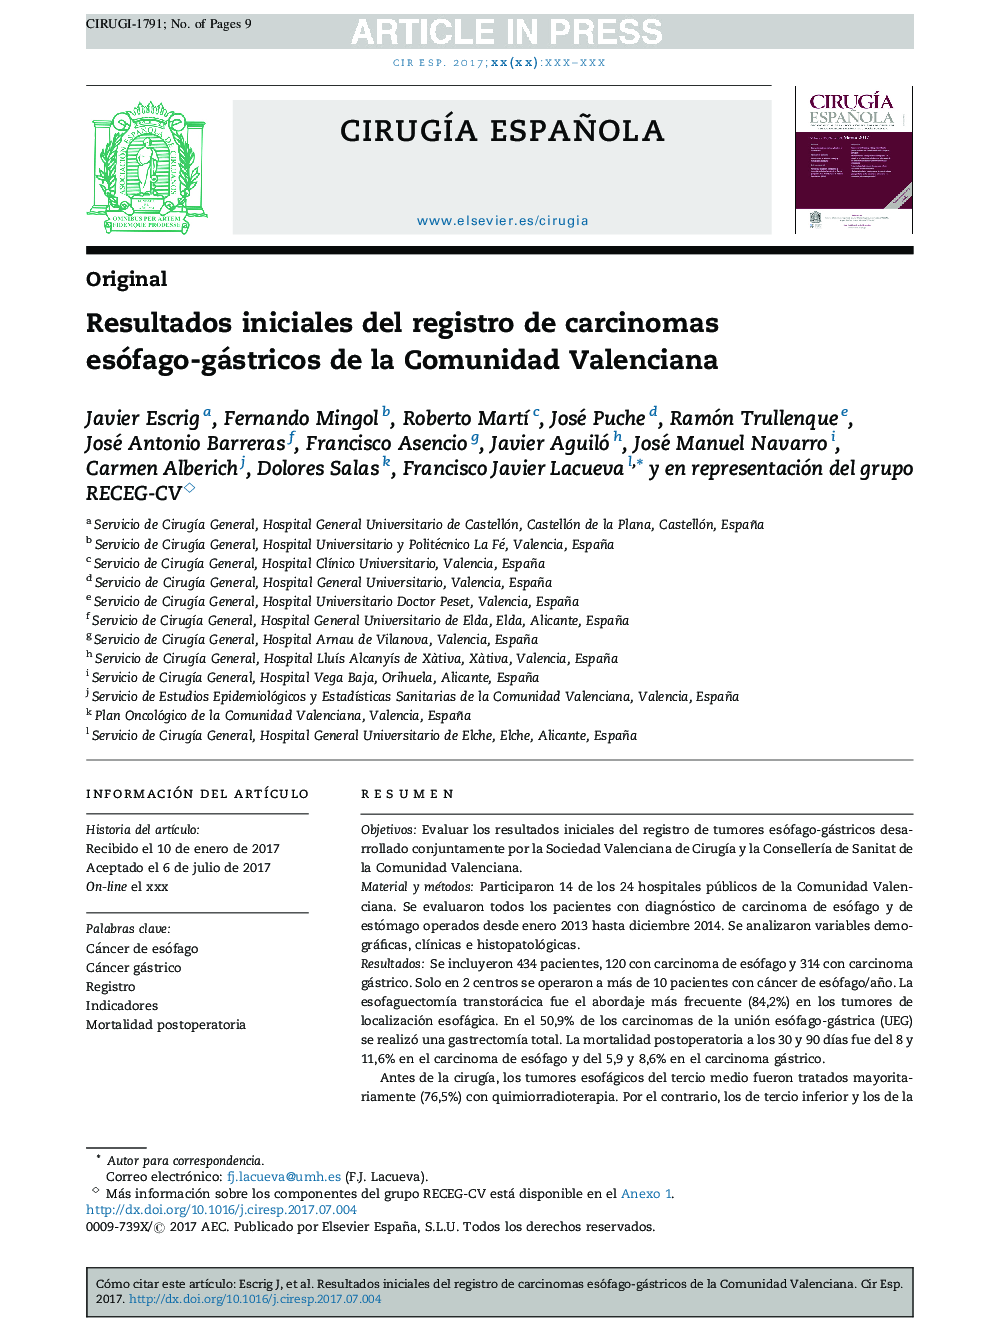 Resultados iniciales del registro de carcinomas esófago-gástricos de la Comunidad Valenciana